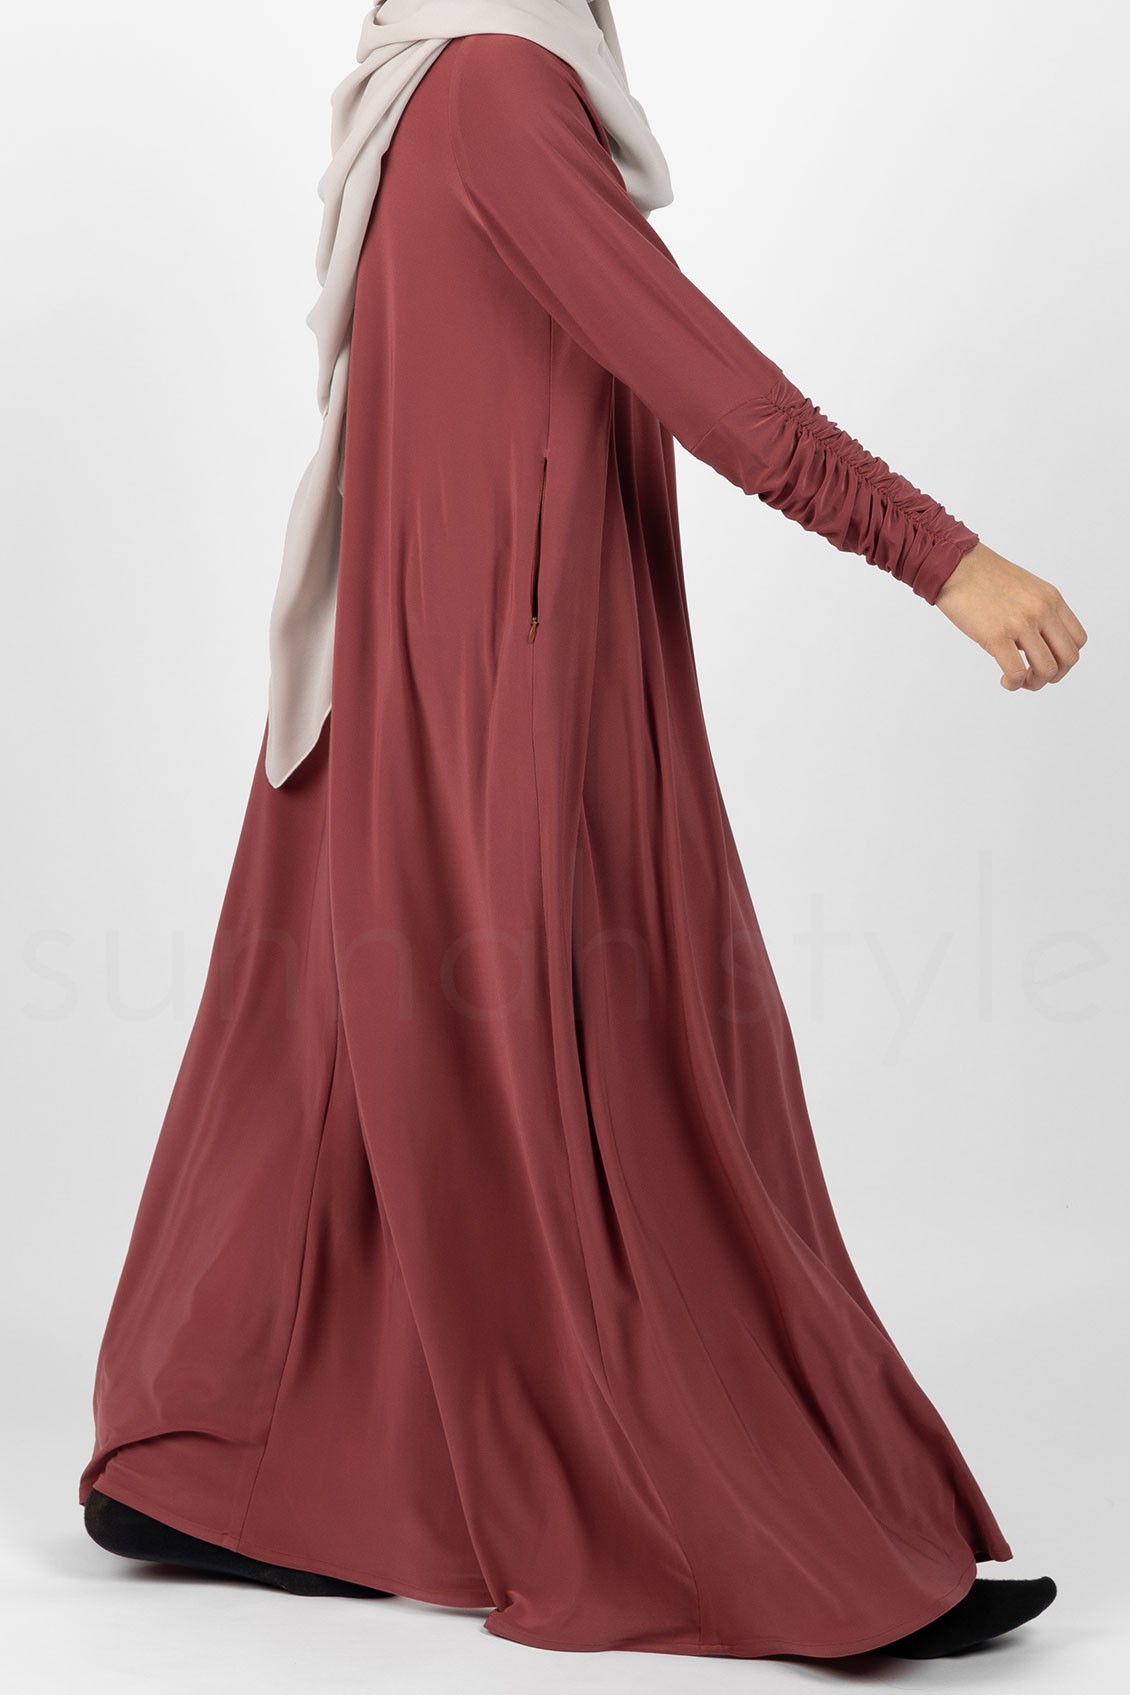 Sunnah Style Girls Flourish Jersey Abaya Smoked Paprika